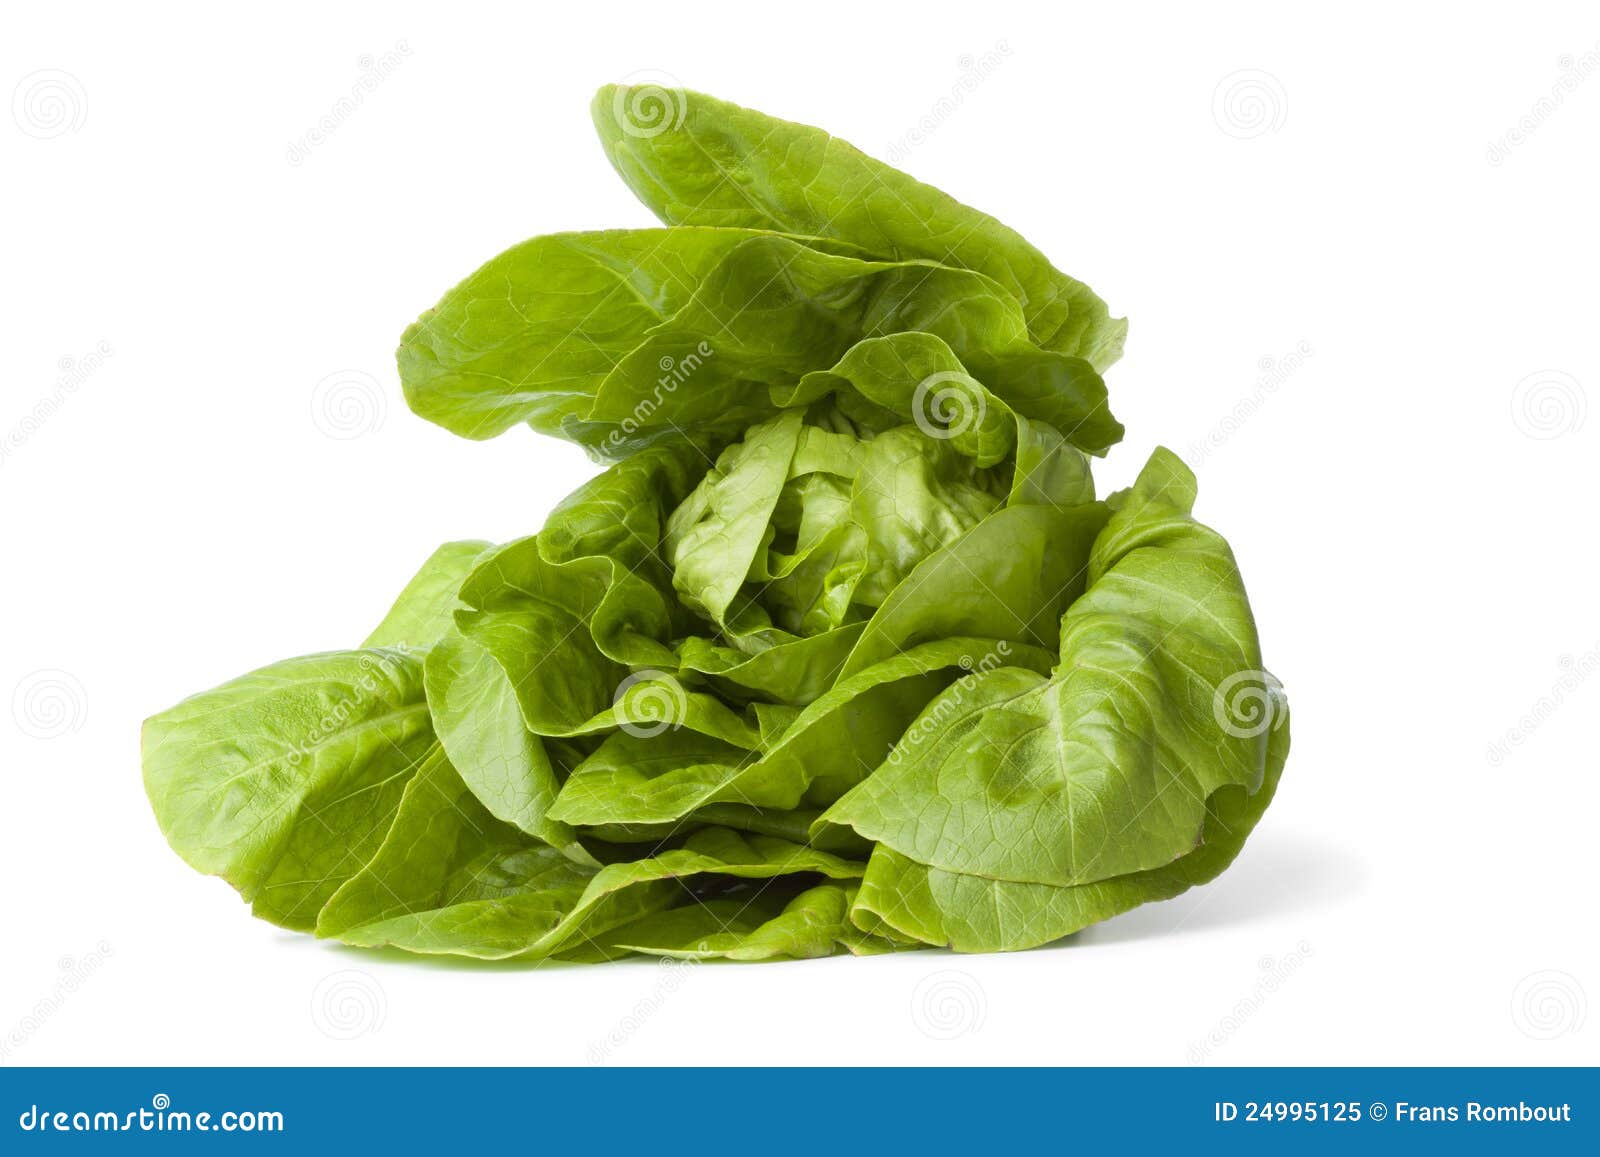 green little gem lettuce